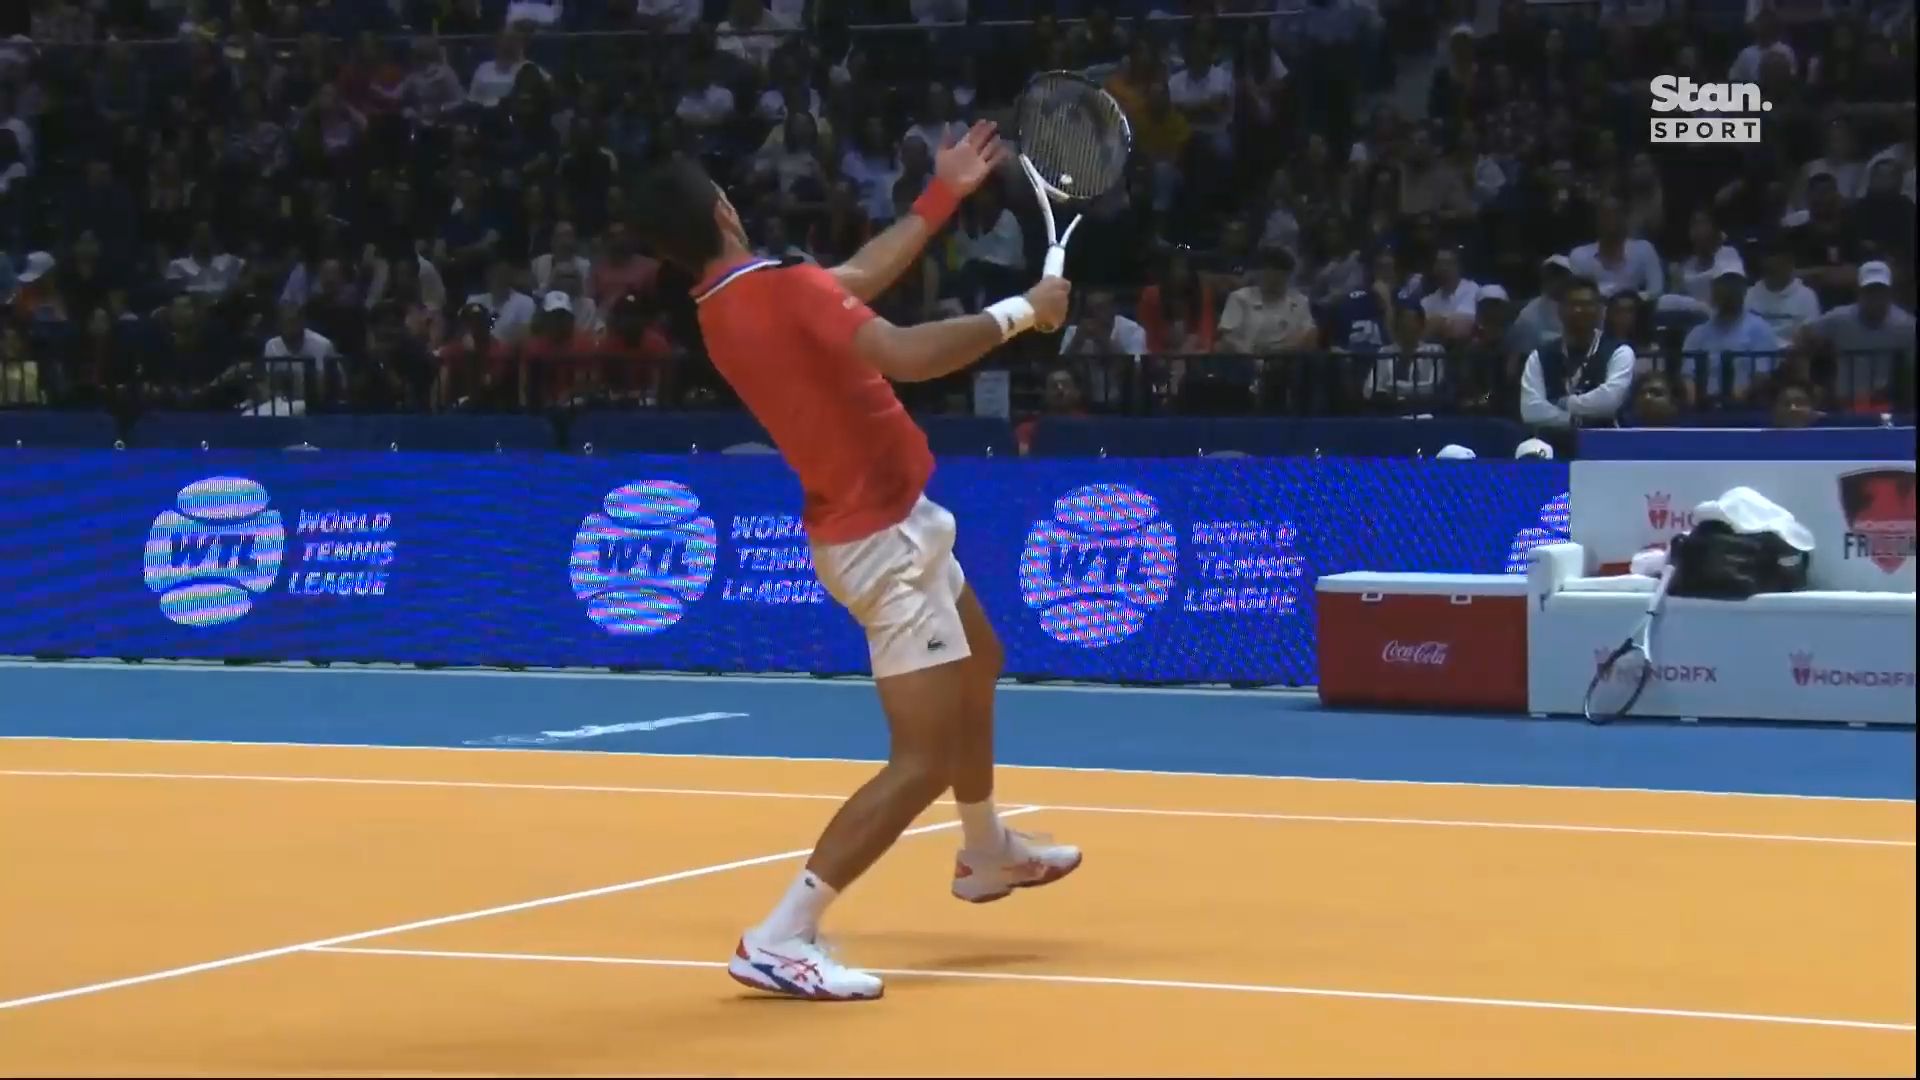 Strange Novak Djokovic revenge act during upset loss to Alexander Zverev at World Tennis League